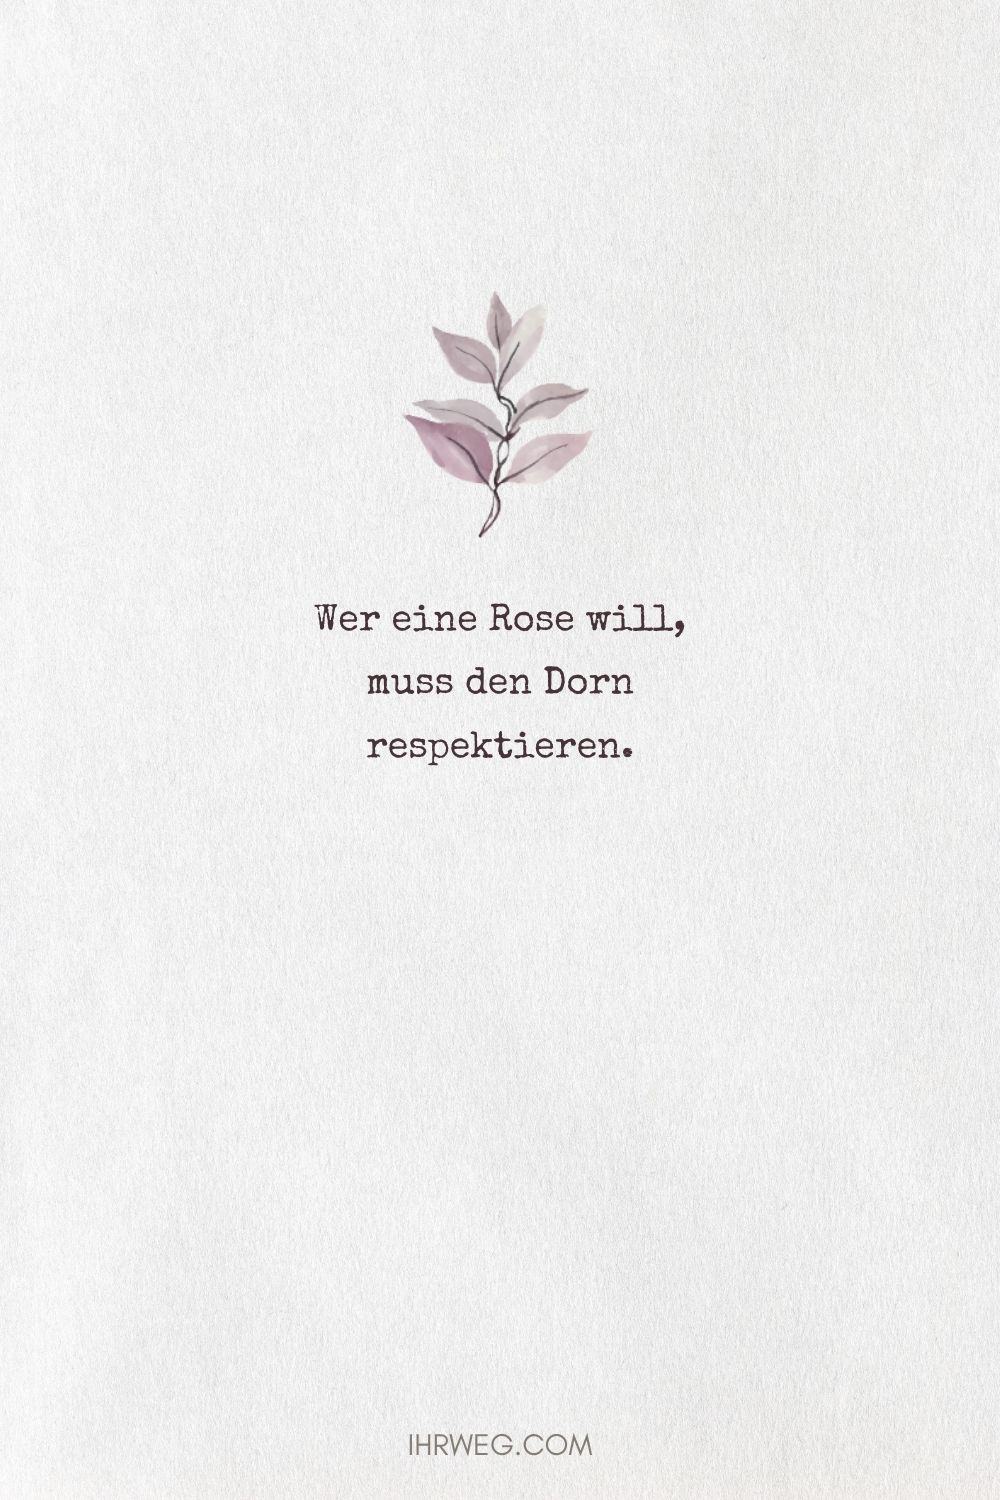 Wer eine Rose will, muss den Dorn respektieren